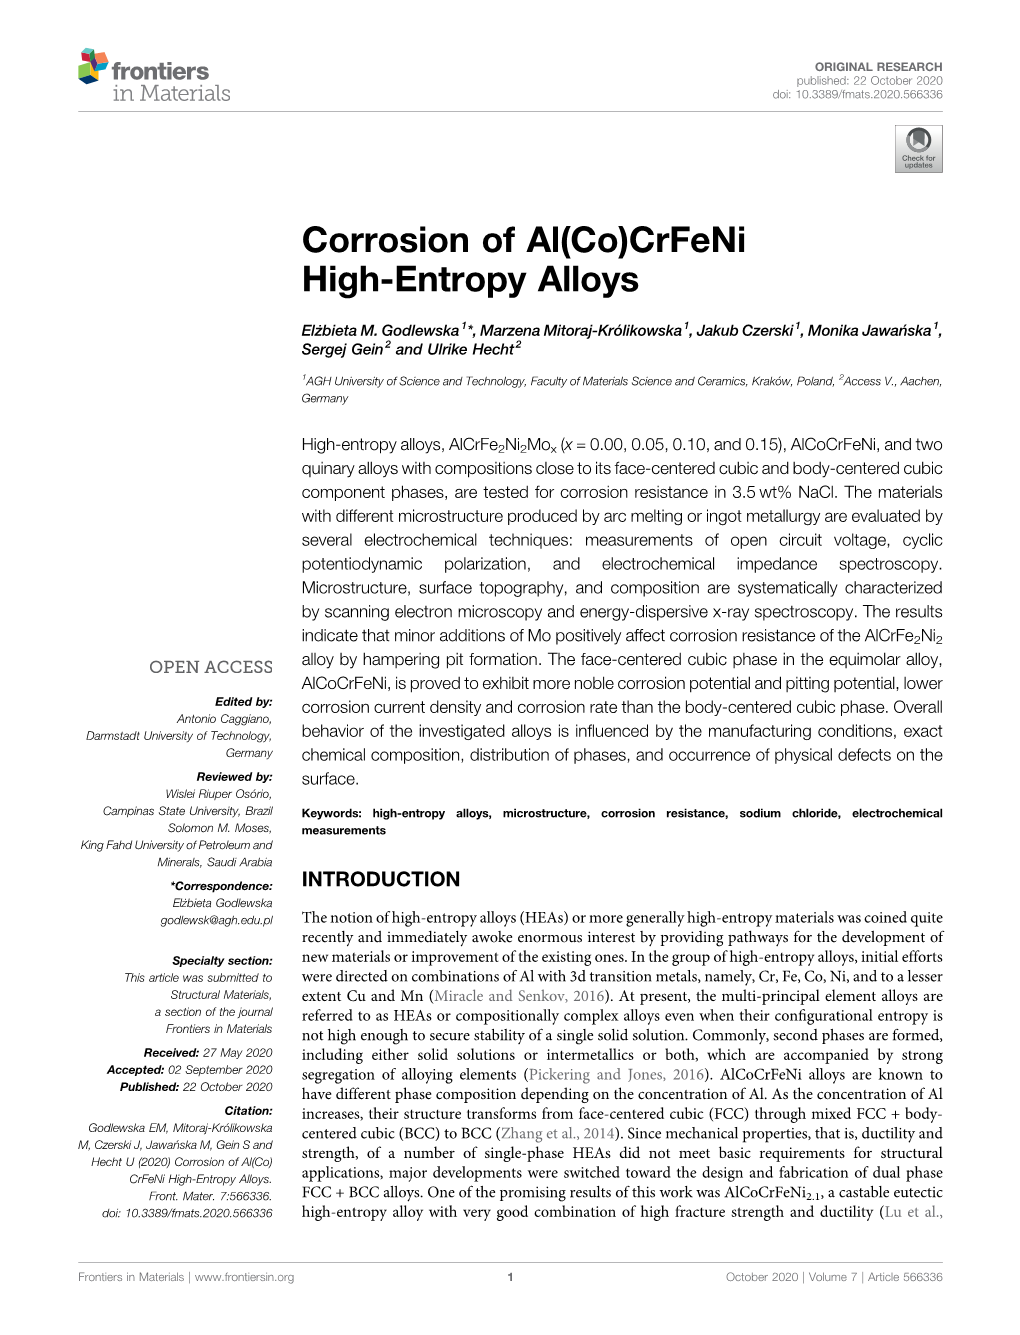 Corrosion of Al(Co)Crfeni High-Entropy Alloys